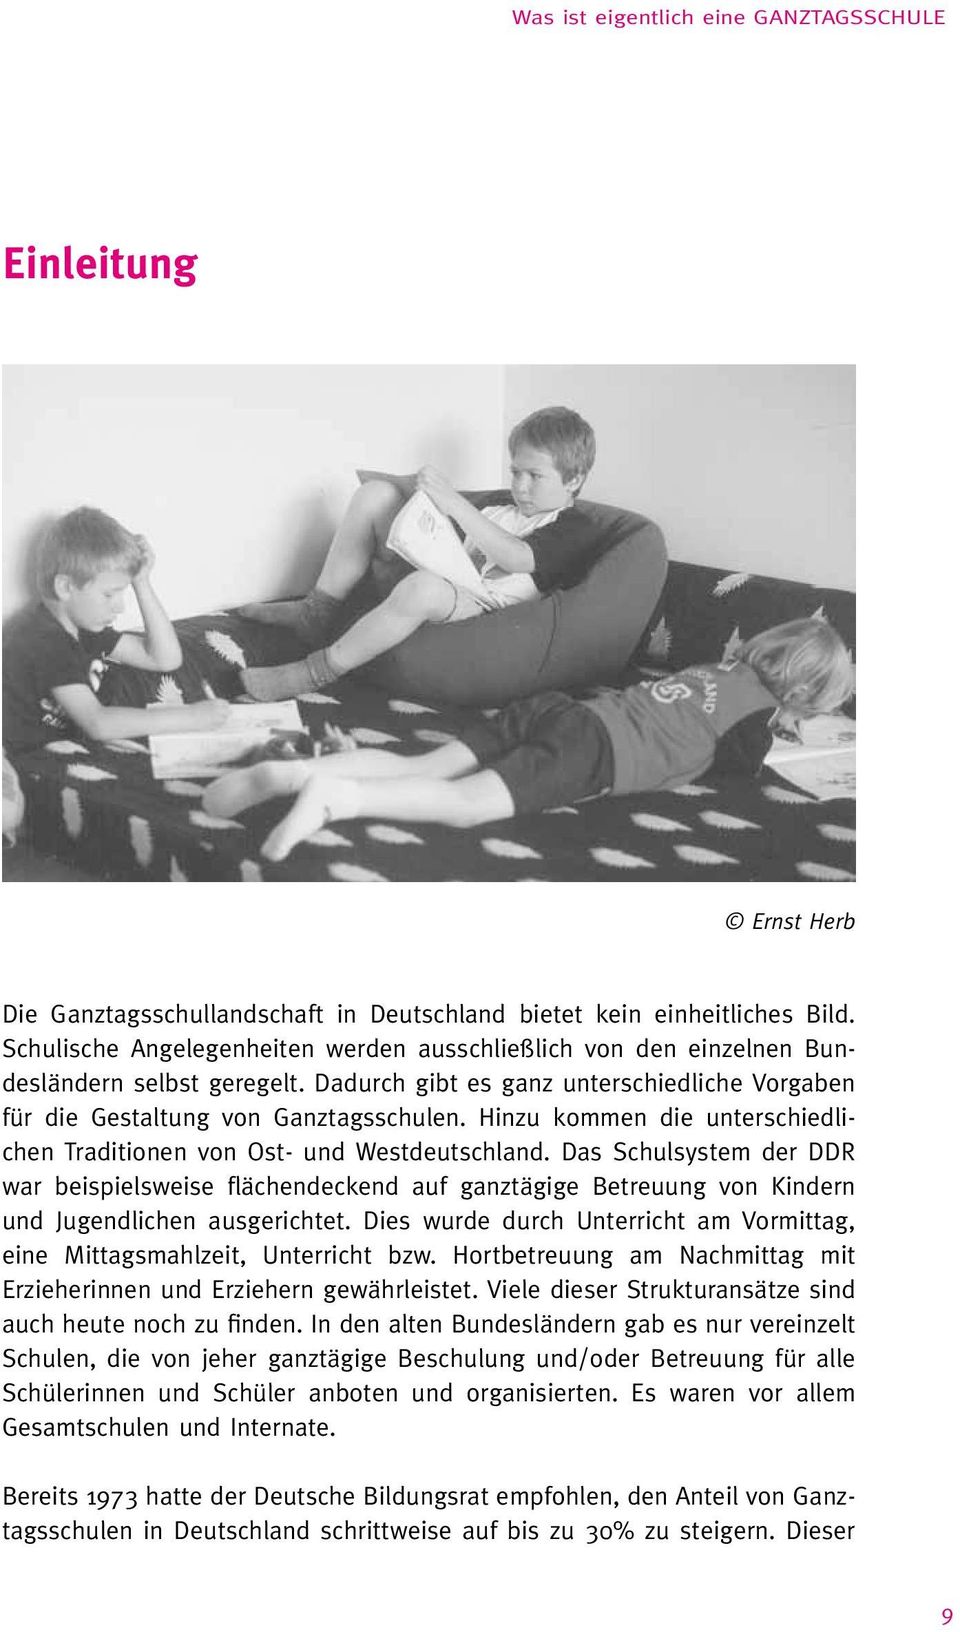 Das Schulsystem der DDR war beispielsweise flächendeckend auf ganztägige Betreuung von Kindern und Jugendlichen ausgerichtet.